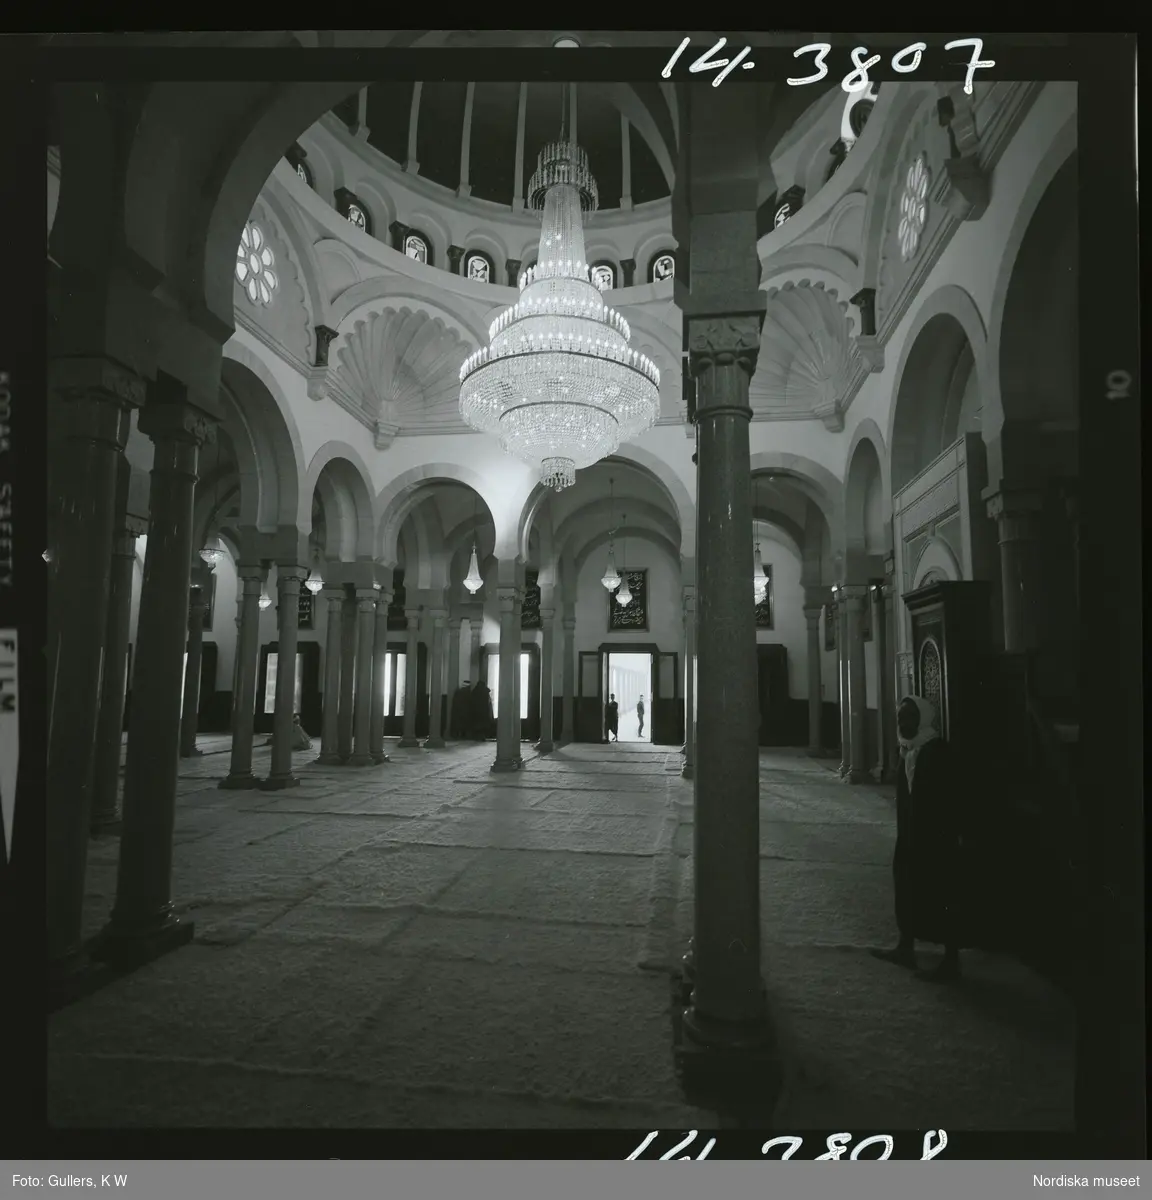 2791/1 Tunisien allmänt. Interiör i moské.